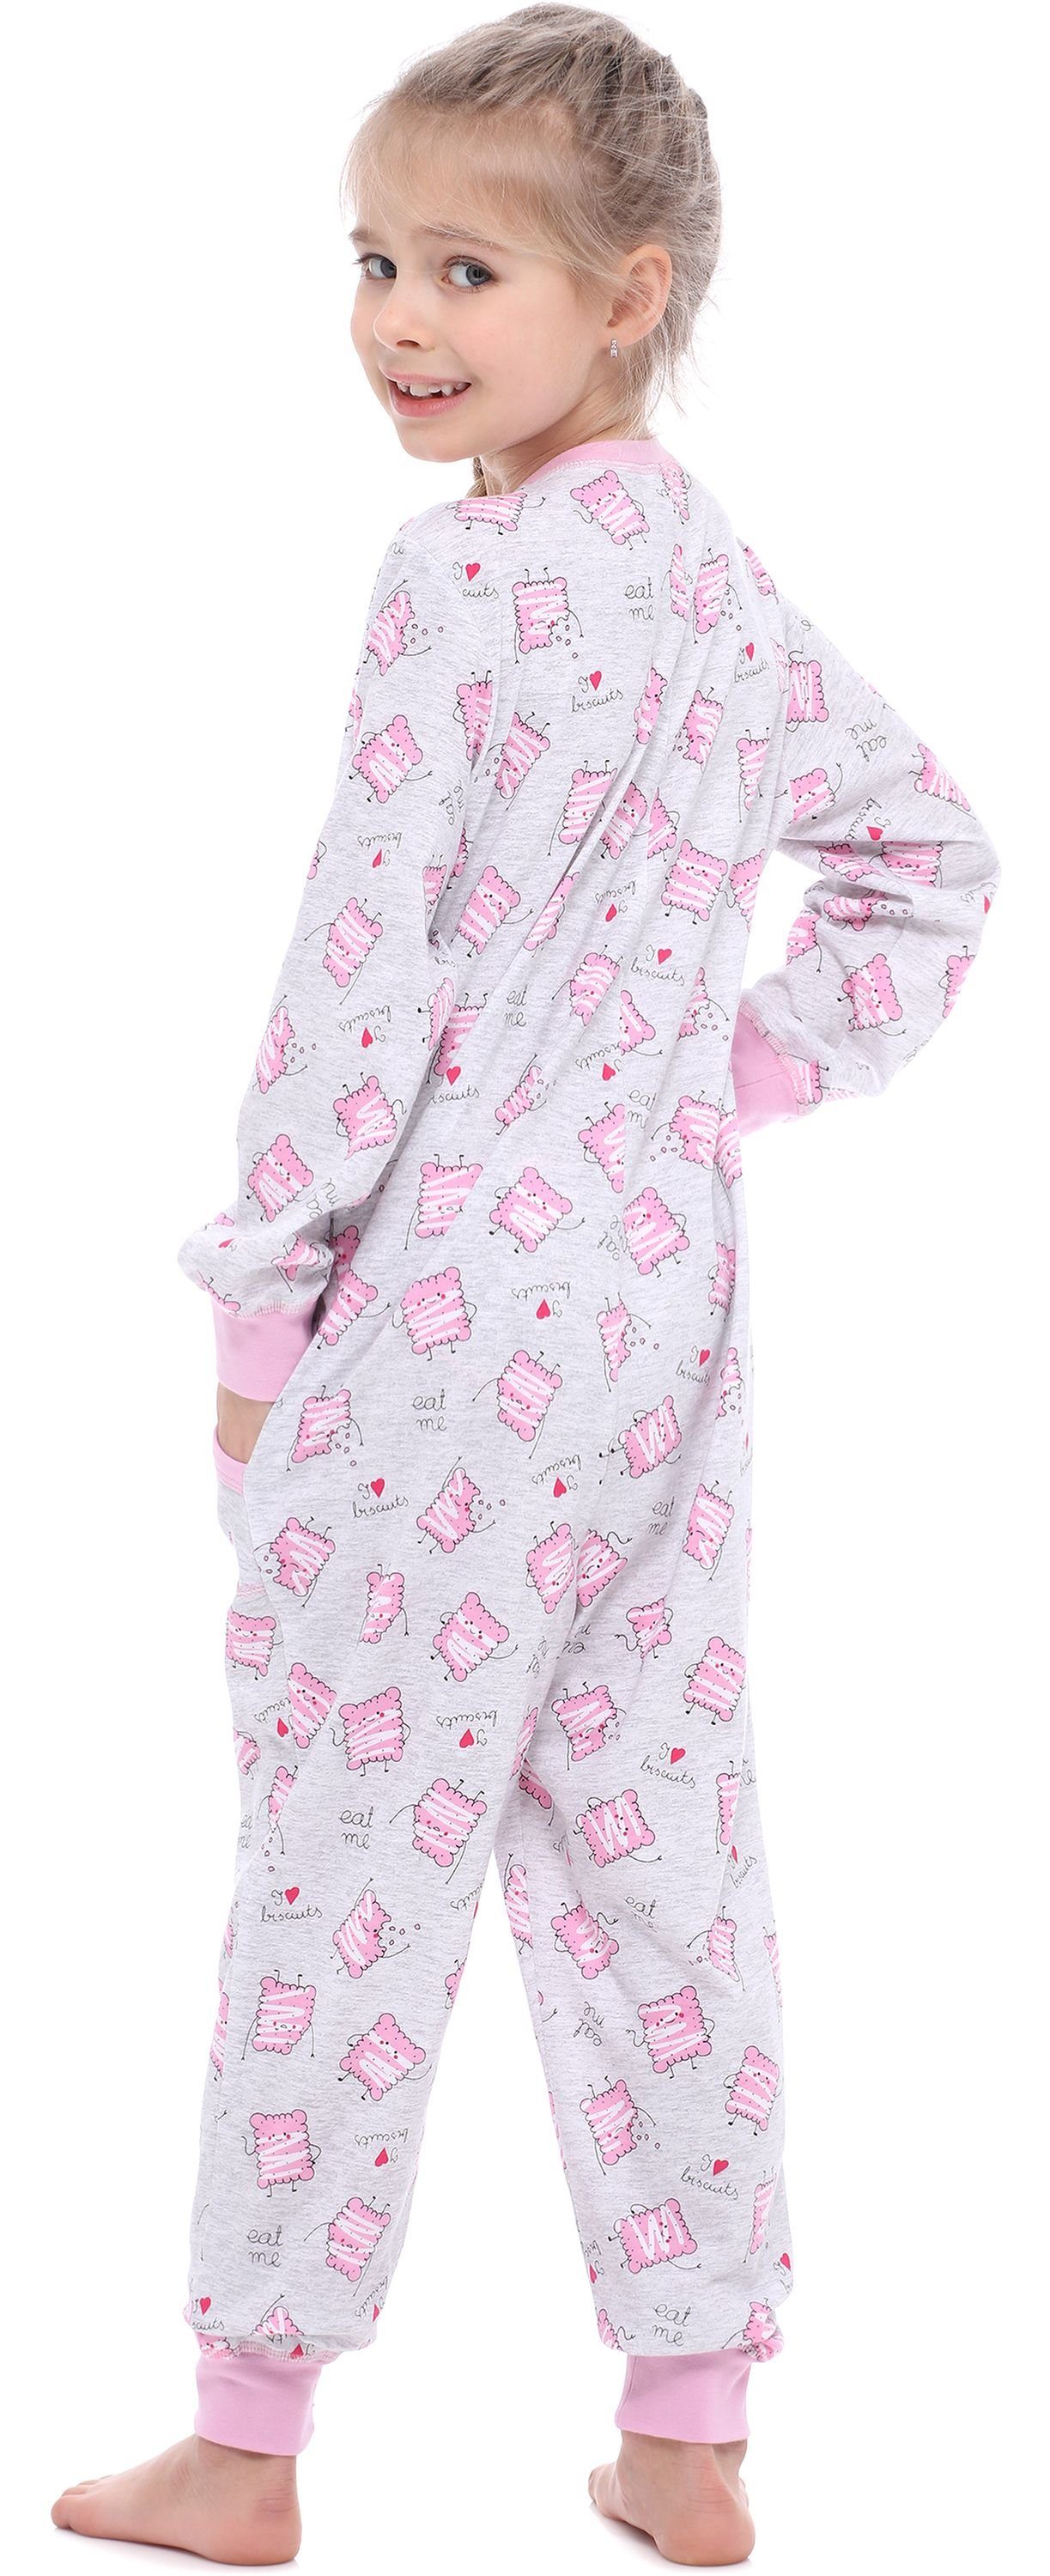 Merry Style Schlafanzug Mädchen Schlafanzug Jumpsuit Melange MS10-186 Kekse